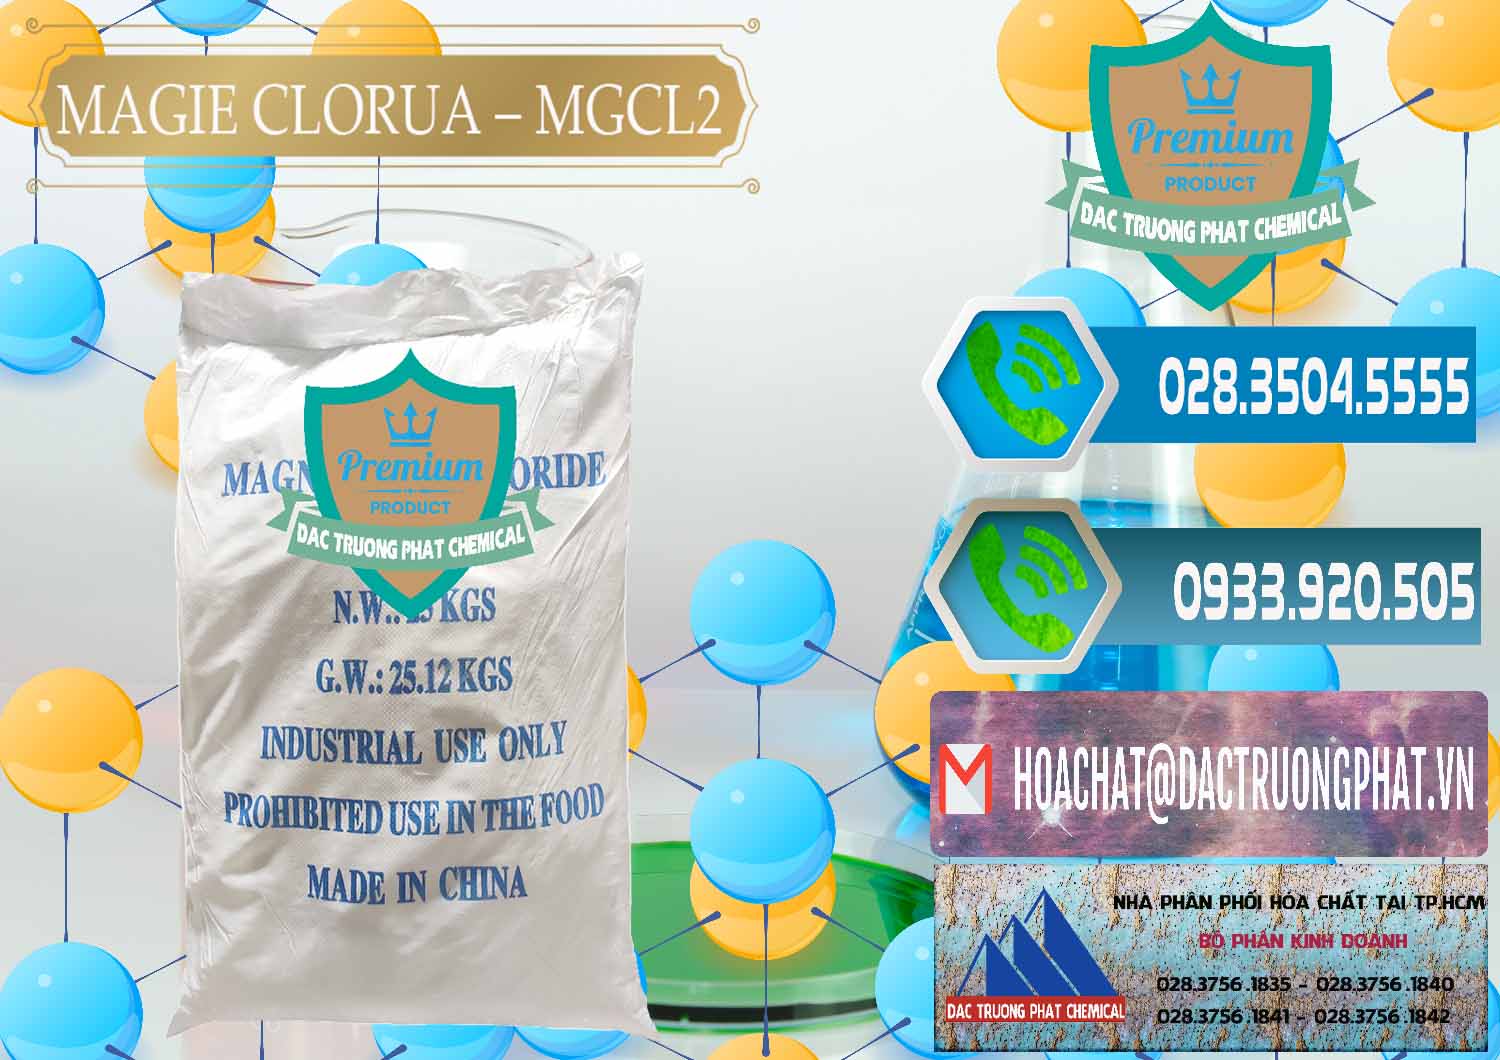 Đơn vị chuyên phân phối - bán Magie Clorua – MGCL2 96% Dạng Vảy Trung Quốc China - 0091 - Công ty chuyên bán _ cung cấp hóa chất tại TP.HCM - congtyhoachat.net